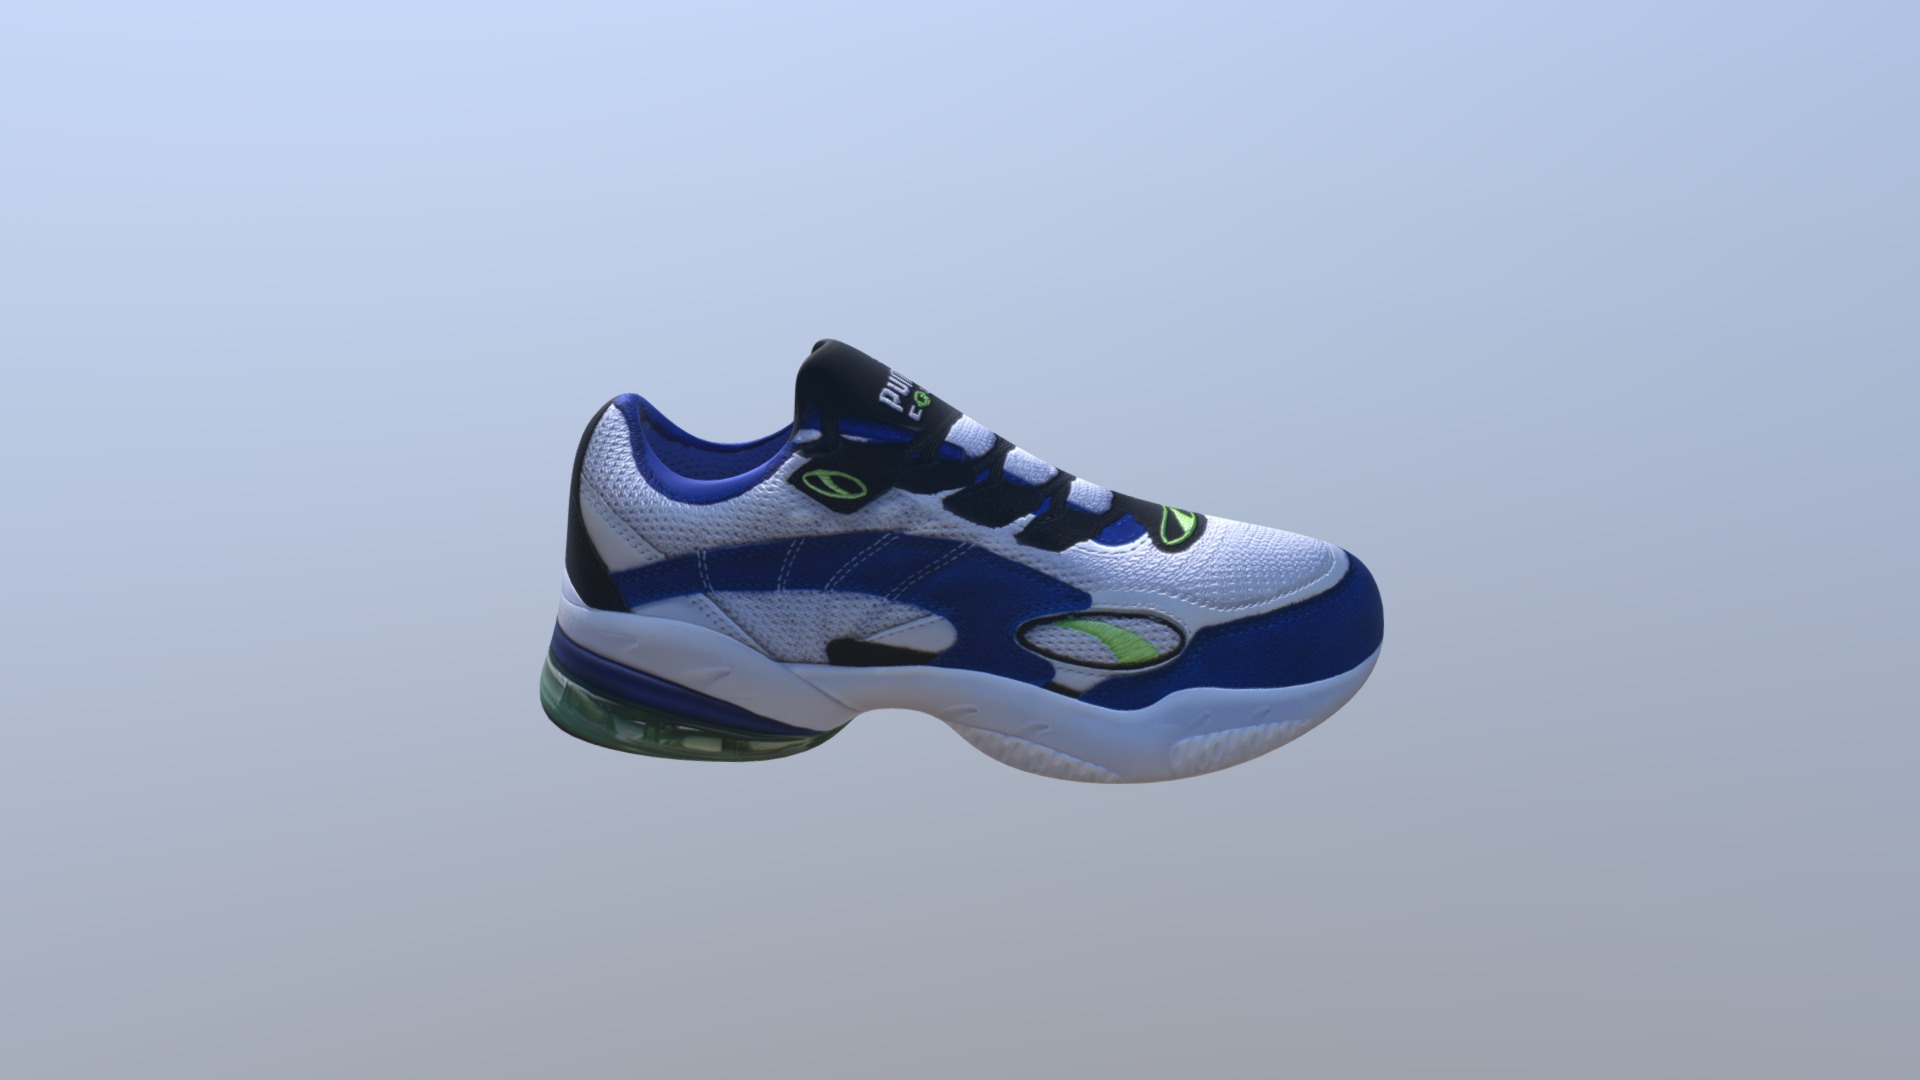 3D model Puma Cell Venom Men’s Sneaker Shoe - This is a 3D model of the Puma Cell Venom Men's Sneaker Shoe. The 3D model is about a blue and white shoe.